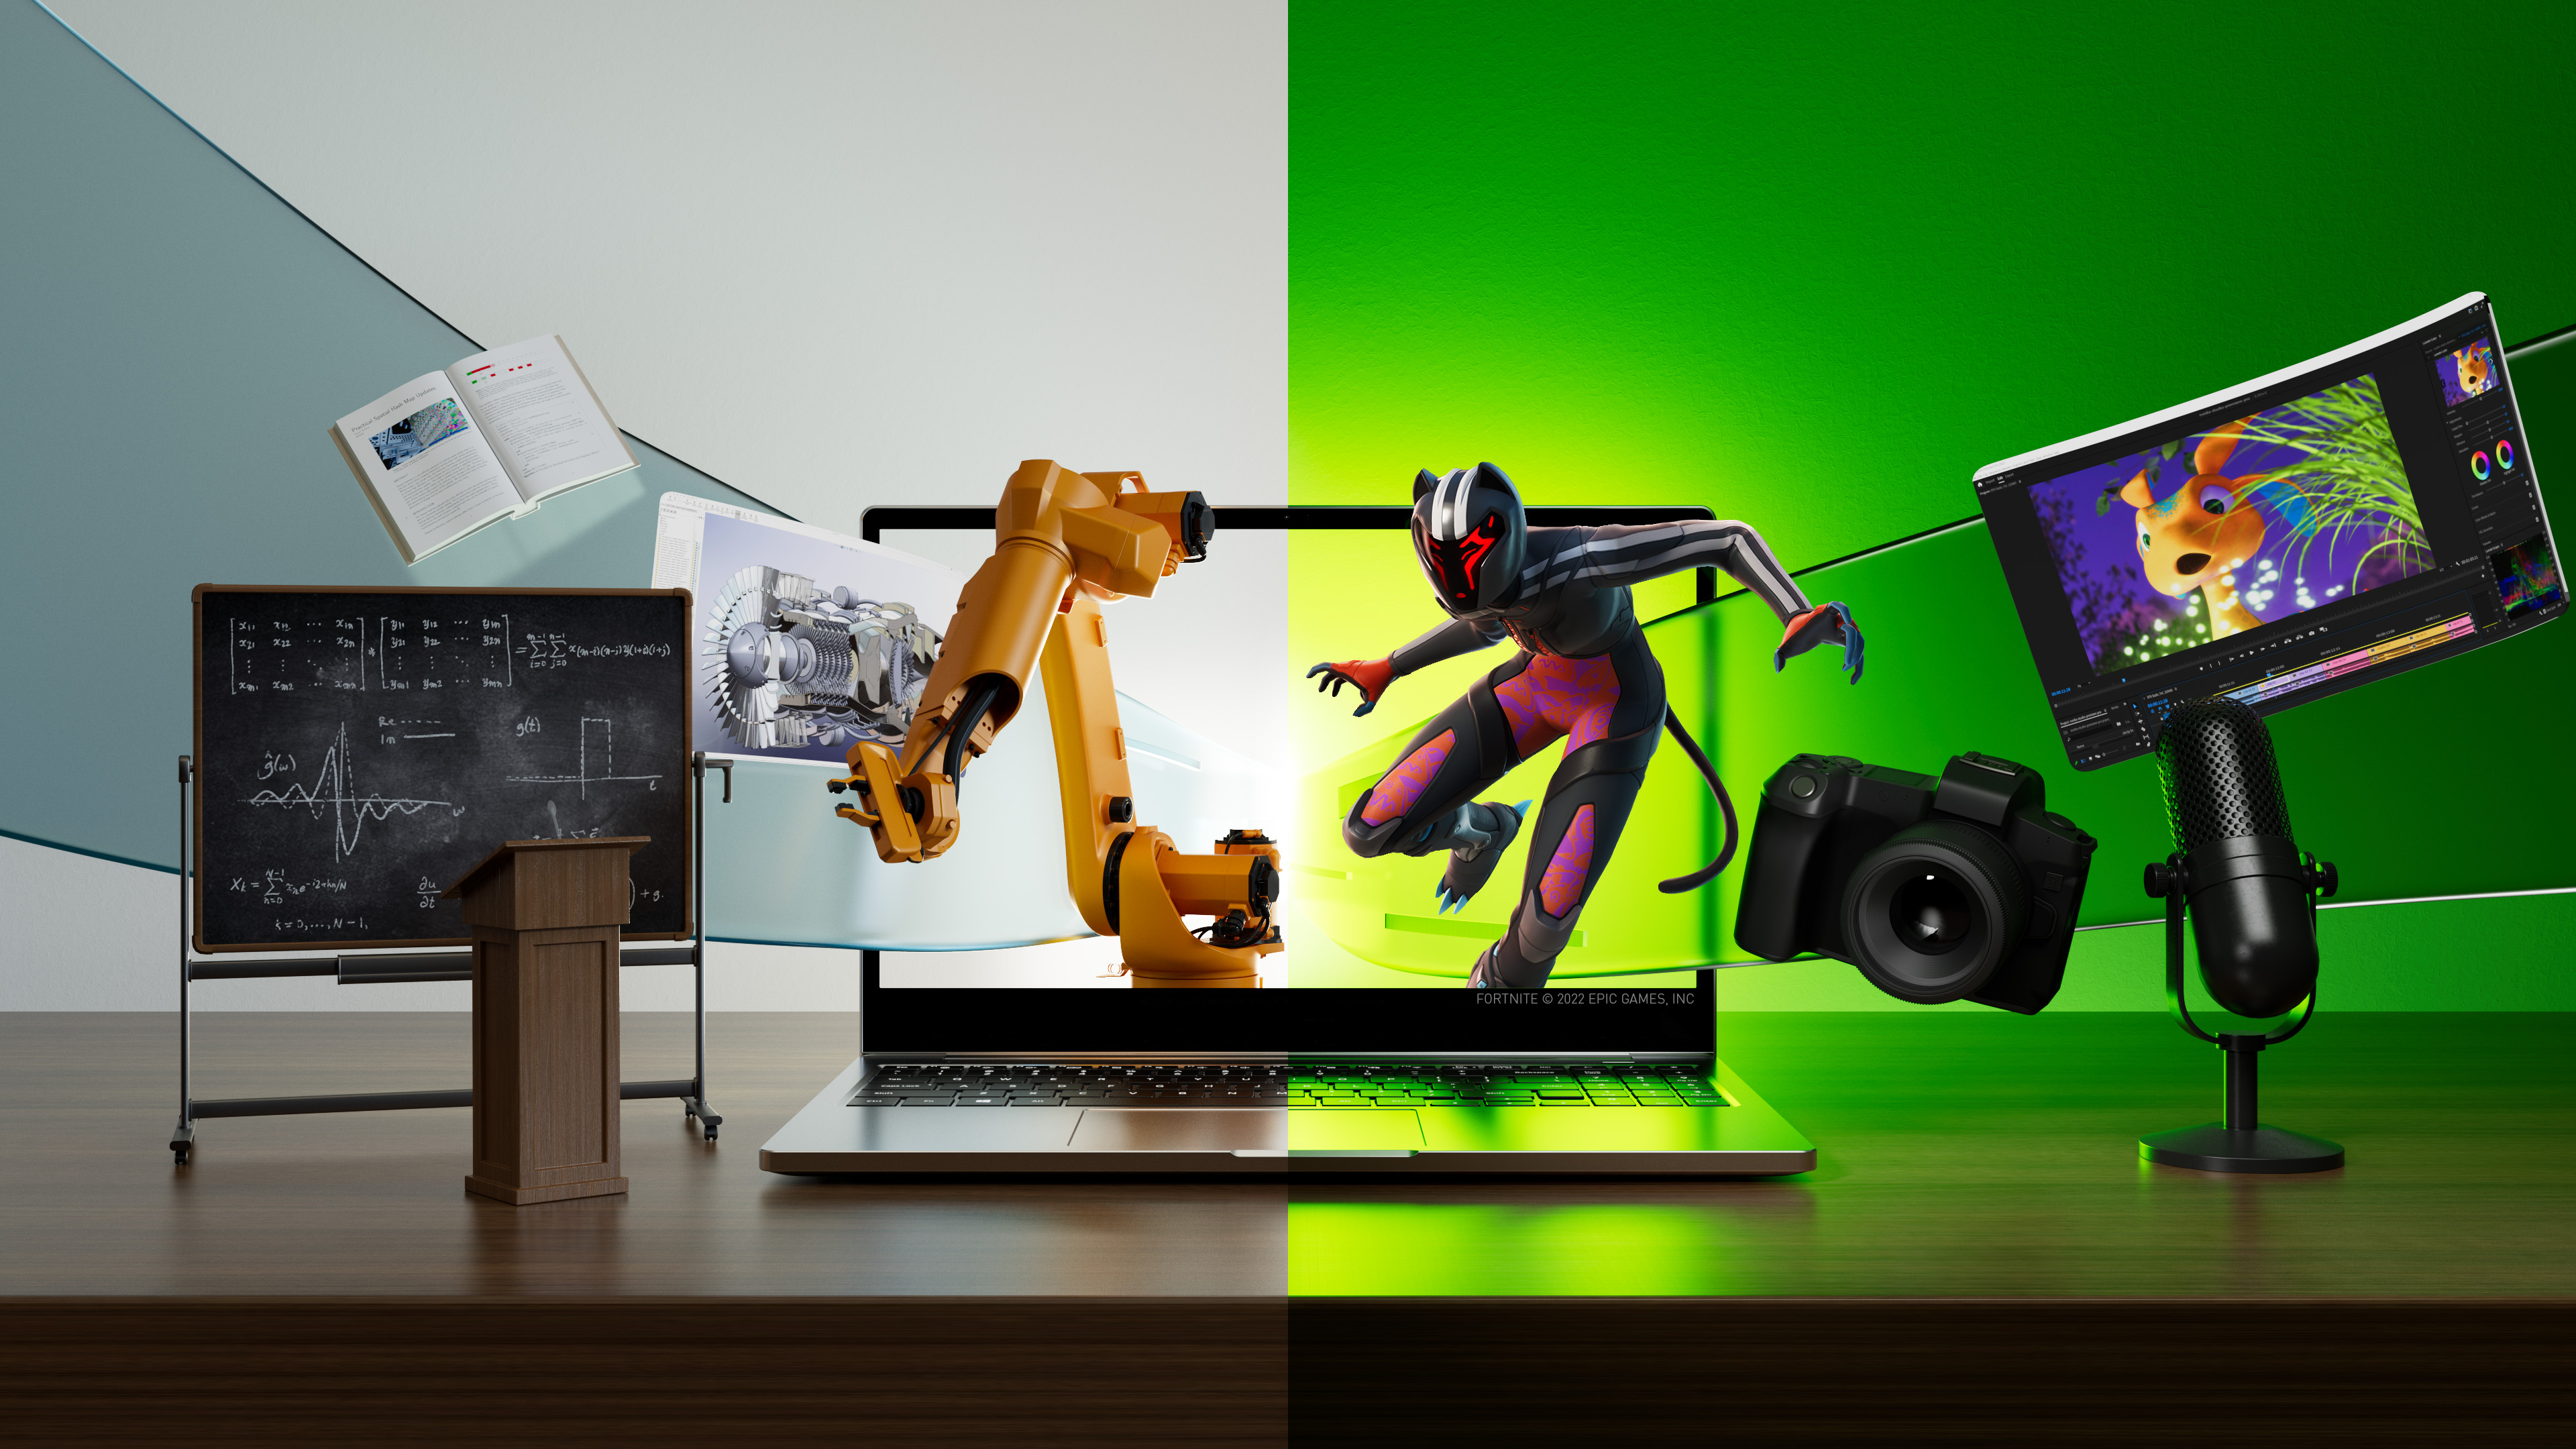 Ноутбук с инженерными и учебными объектами, появляющимися с левой стороны экрана, и играми и творческими увлечениями, появляющимися с правой стороны.